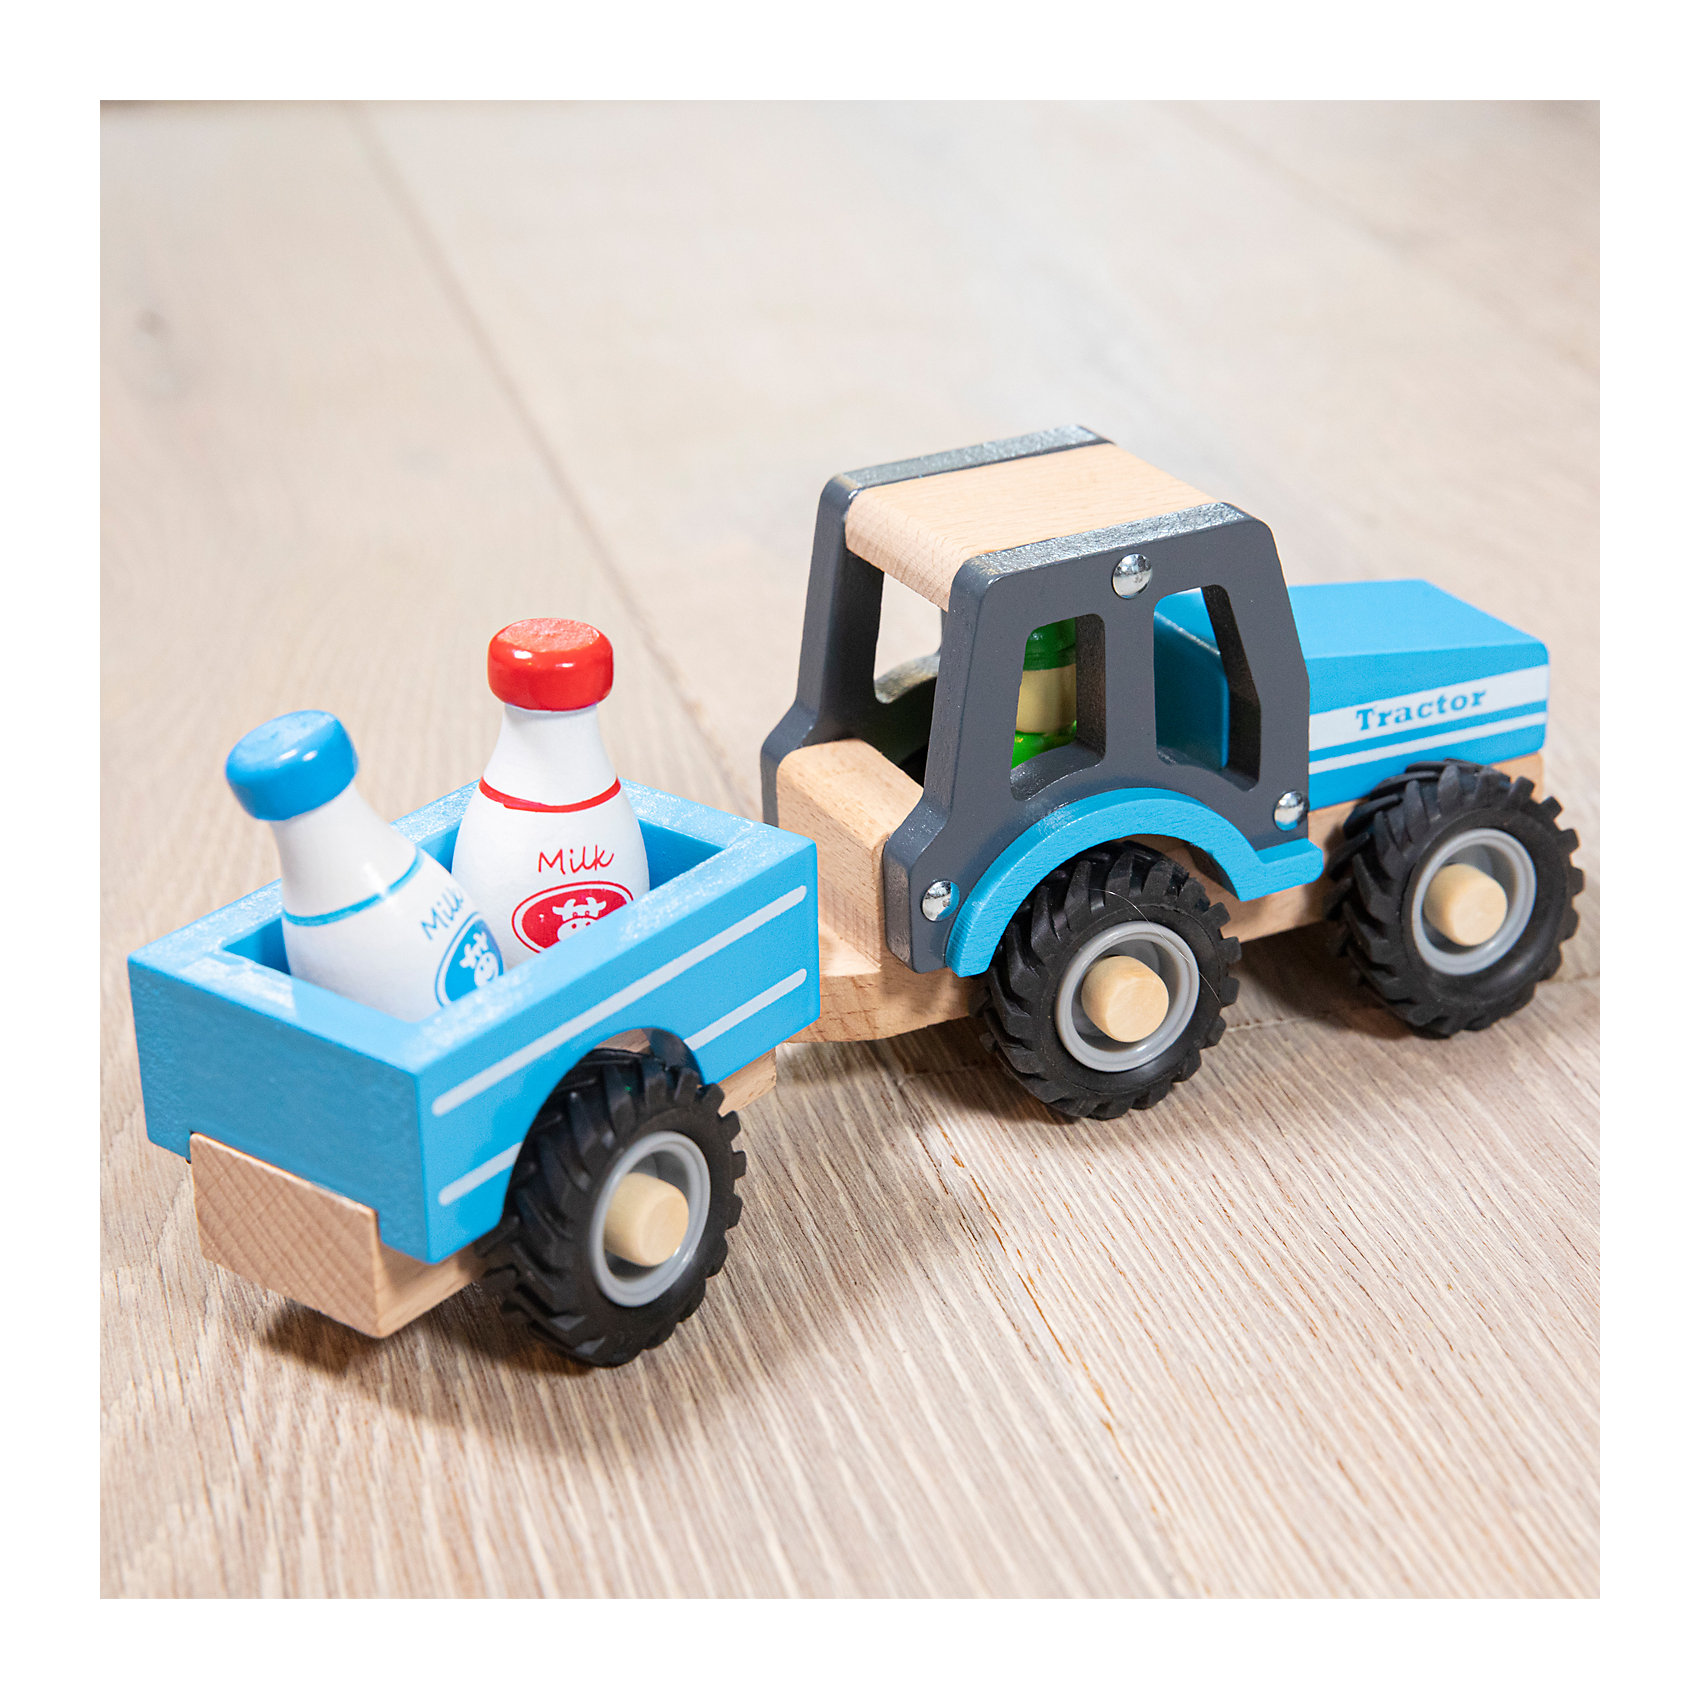 Трактор с прицепом Молоко New Classic Toys 16162959